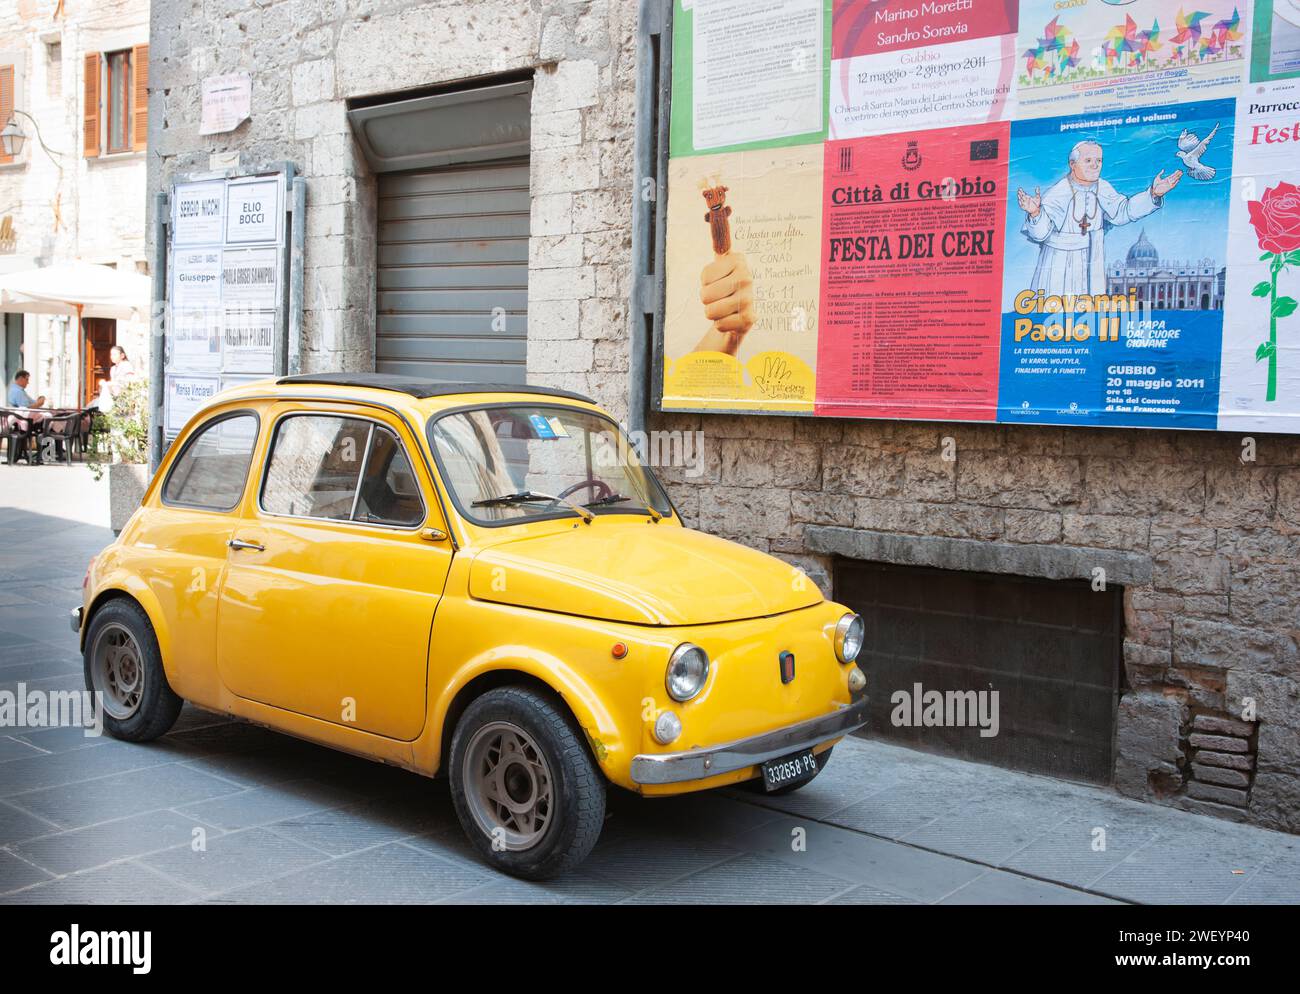 Gubbio Italien - 13. Mai 2011; alter gelber kleiner italienischer Oldtimer parkt in der Altstadtstraße unter einer Wand von Plakaten in italienischer Sprache. Stockfoto